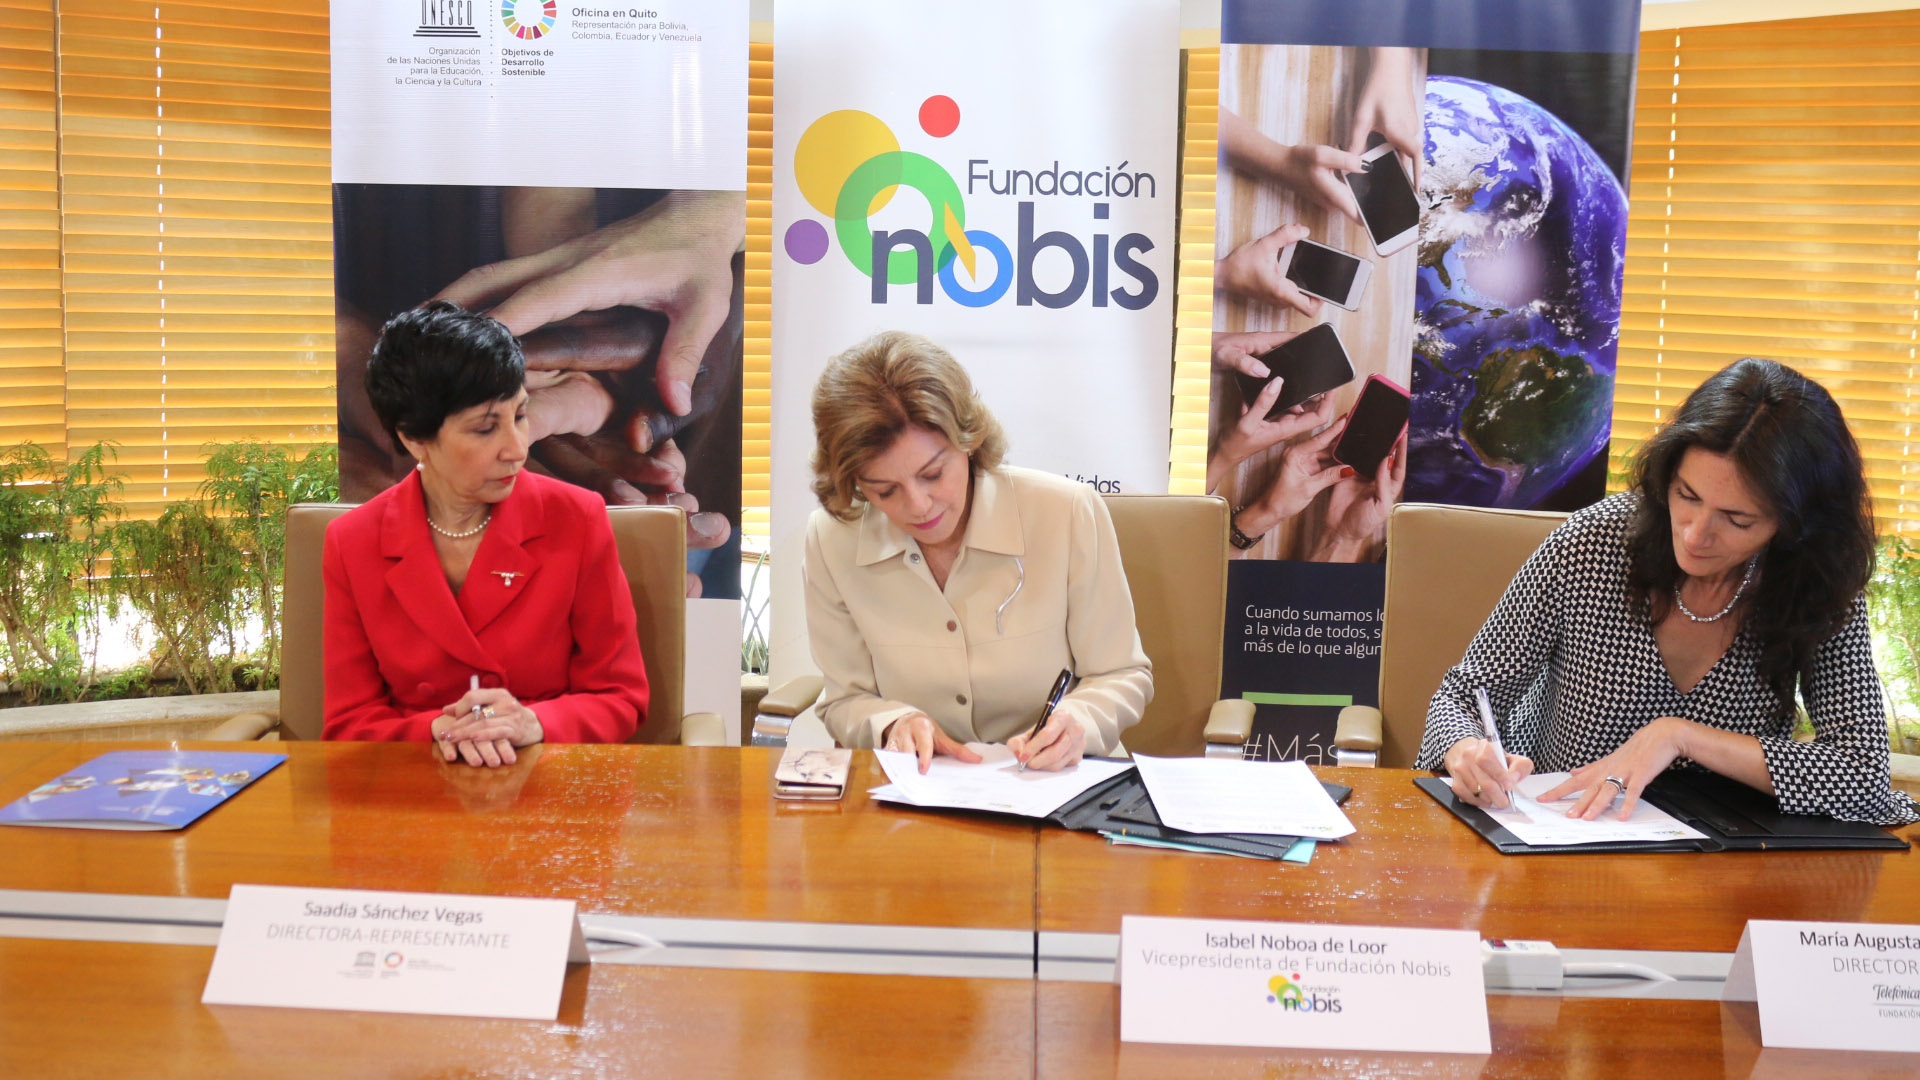 Fundación NOBIS, UNESCO QUITO y Fundación Telefónica Ecuador firmaron un convenio tripartito en favor de una educación de calidad de niñas, niños y jóvenes del Ecuador.